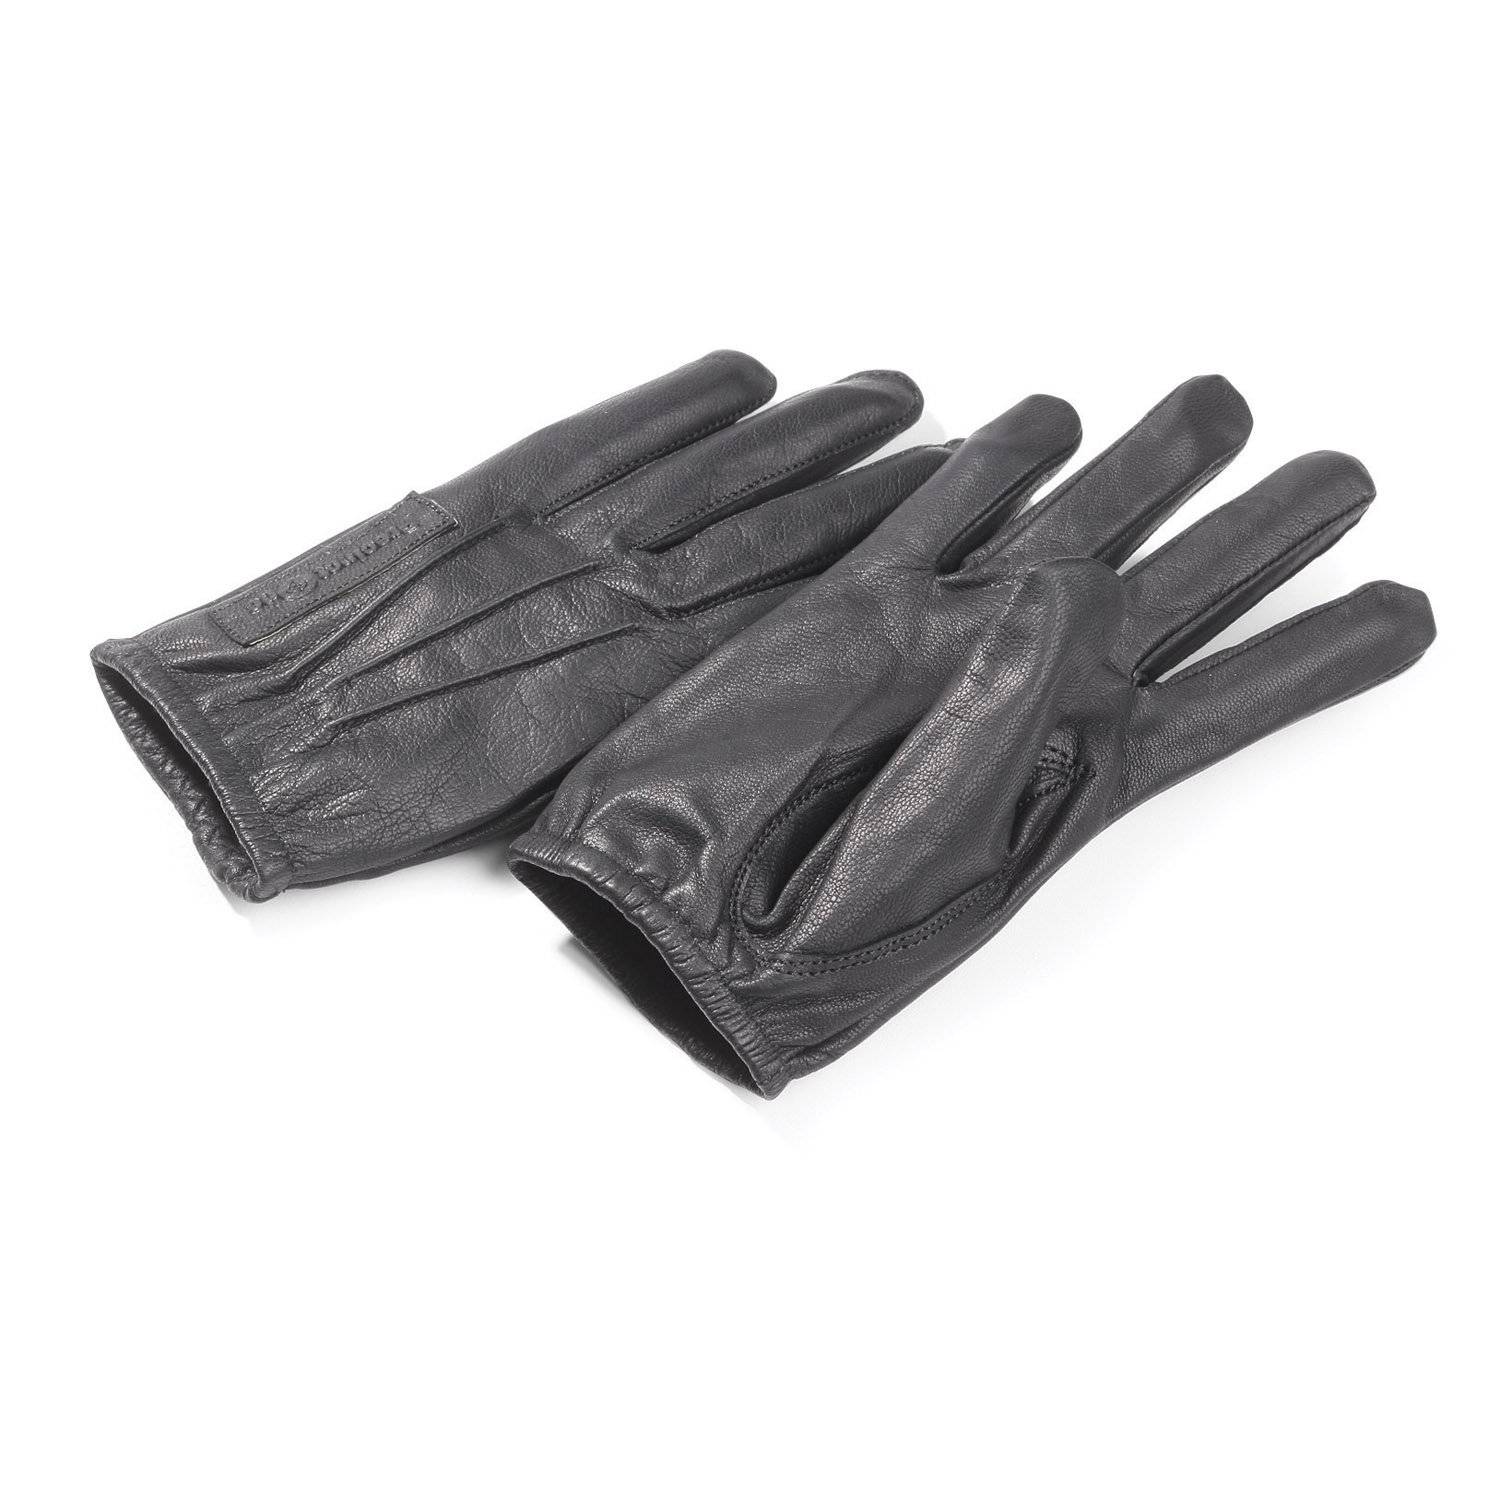 Precinct One Men's Waterproof Classic Leather Duty Gloves